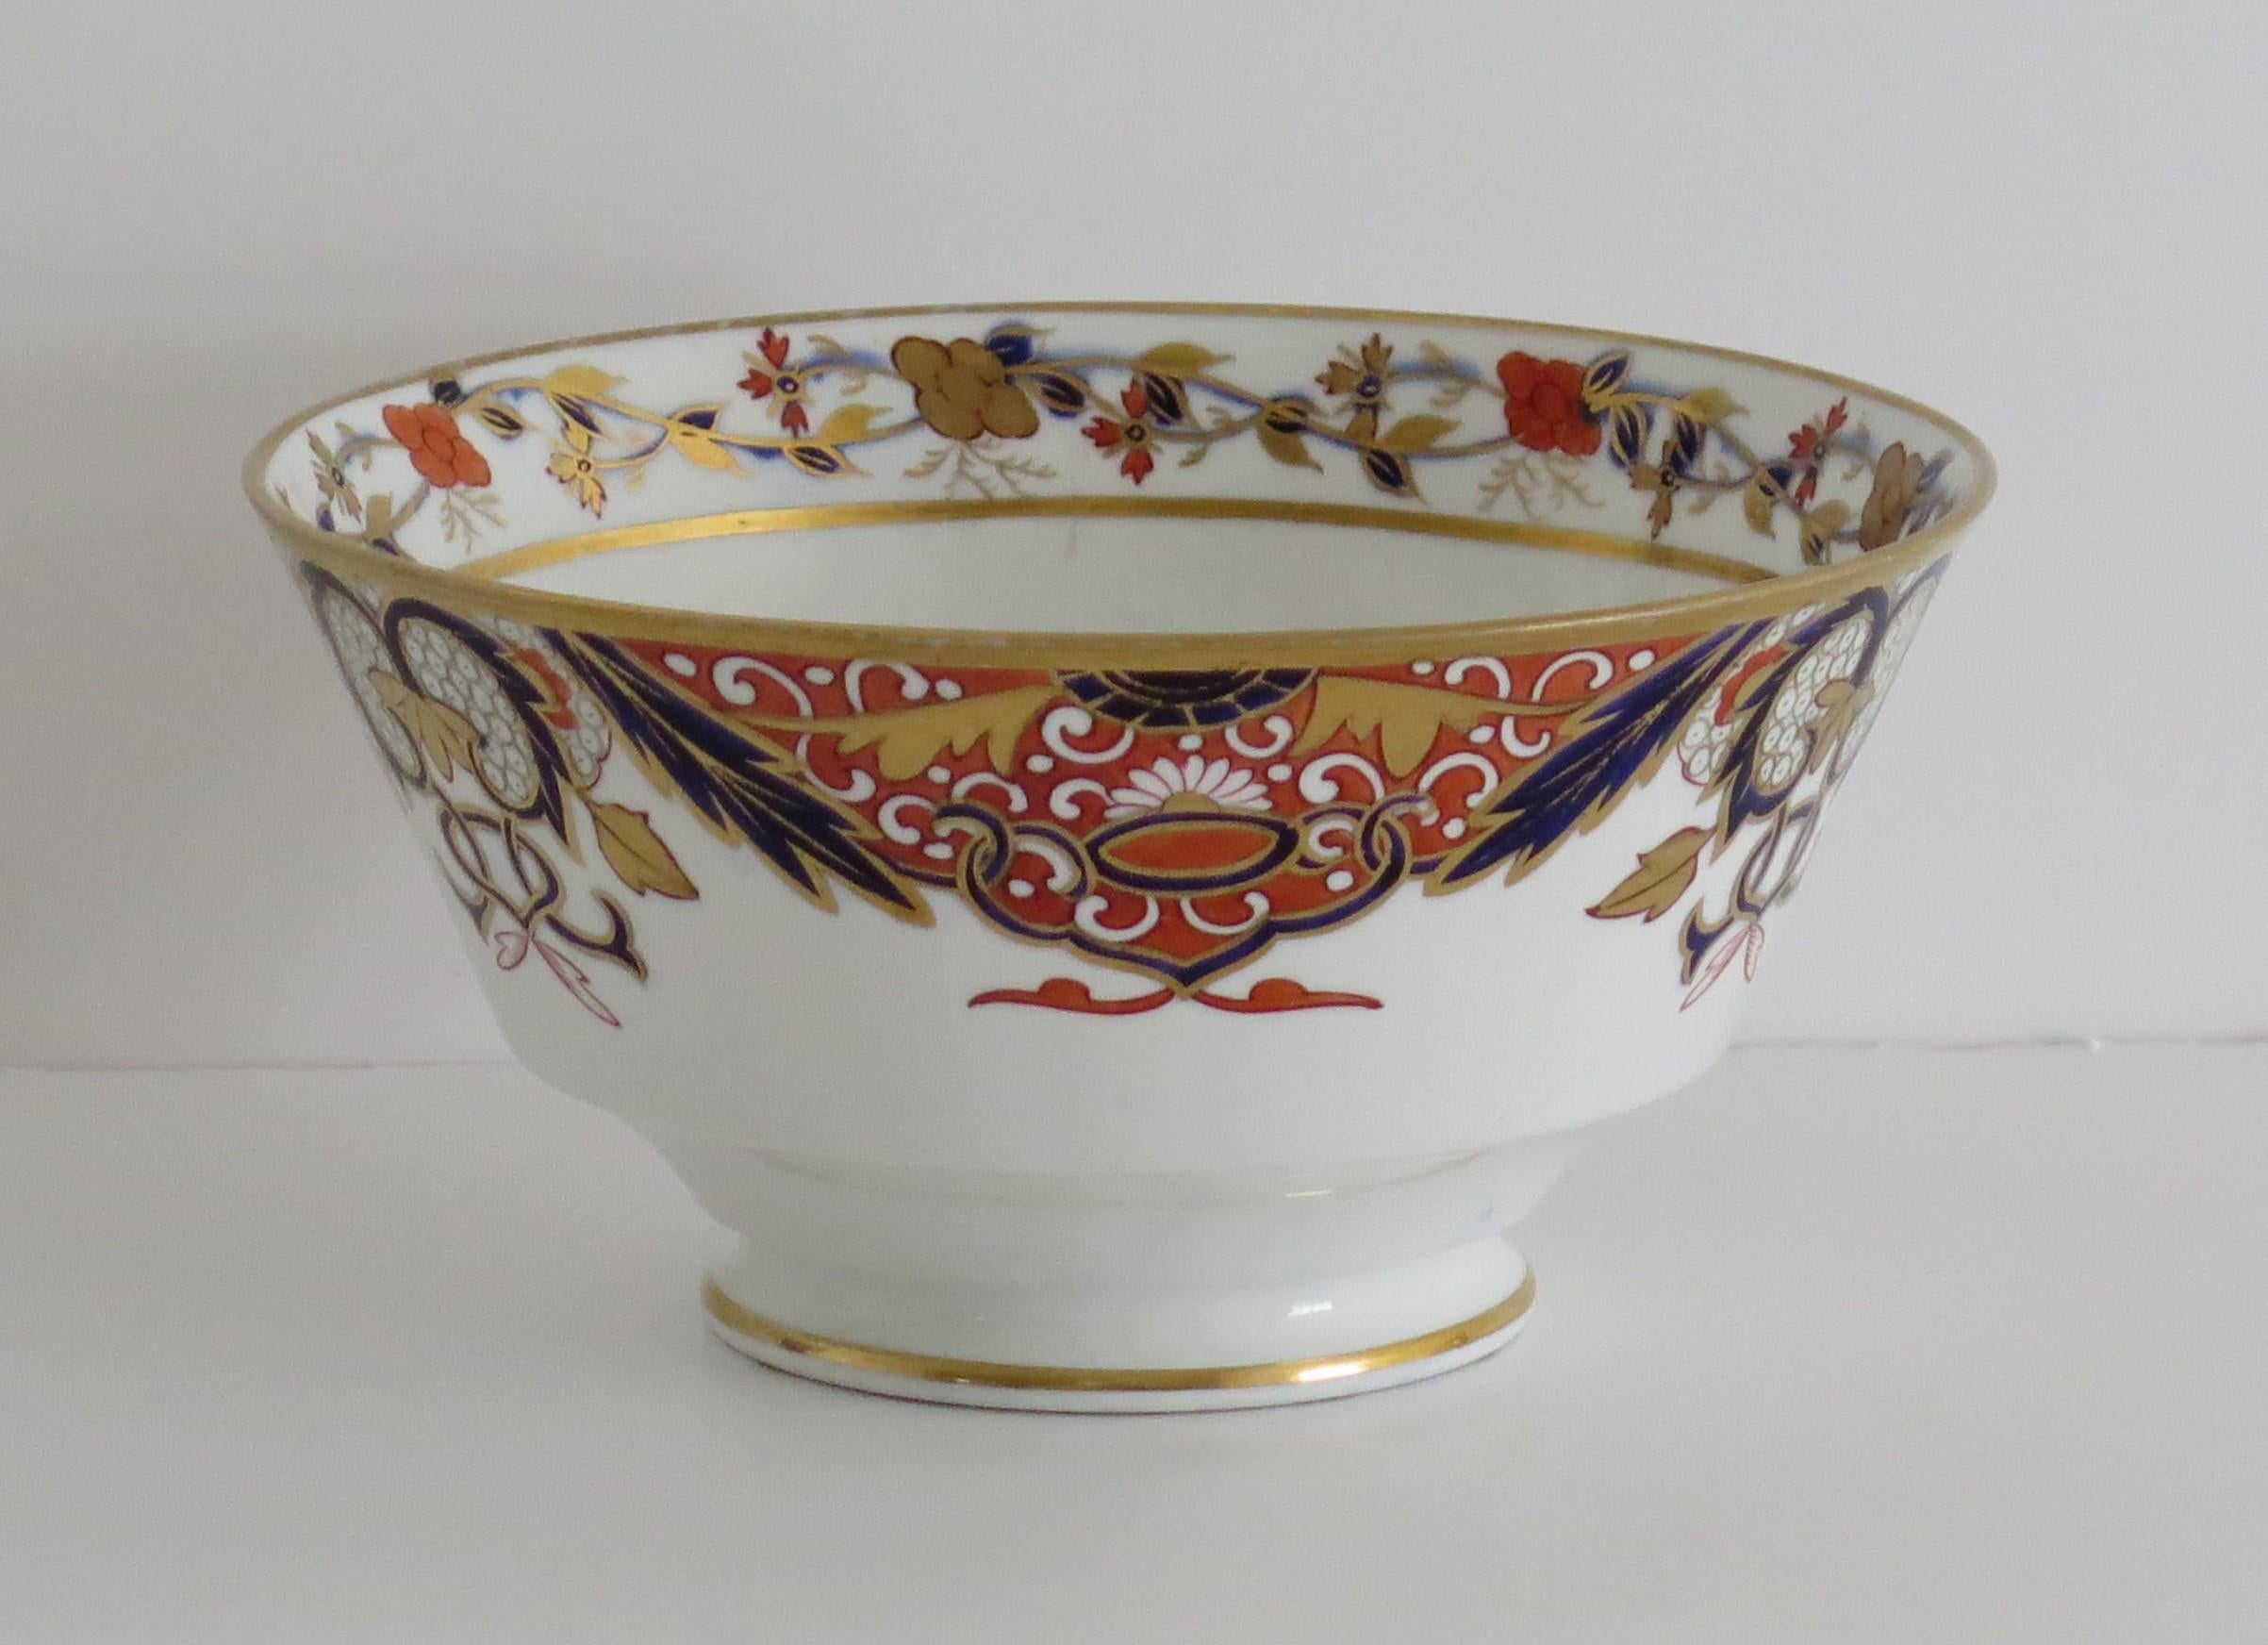 Il s'agit d'un très bon et rare exemple de bol en porcelaine anglais d'époque George III, fabriqué par Spode au début du XIXe siècle, vers 1810.

Le bol est bien empoté et repose sur un pied bas et évasé.

Le bol présente un beau motif 